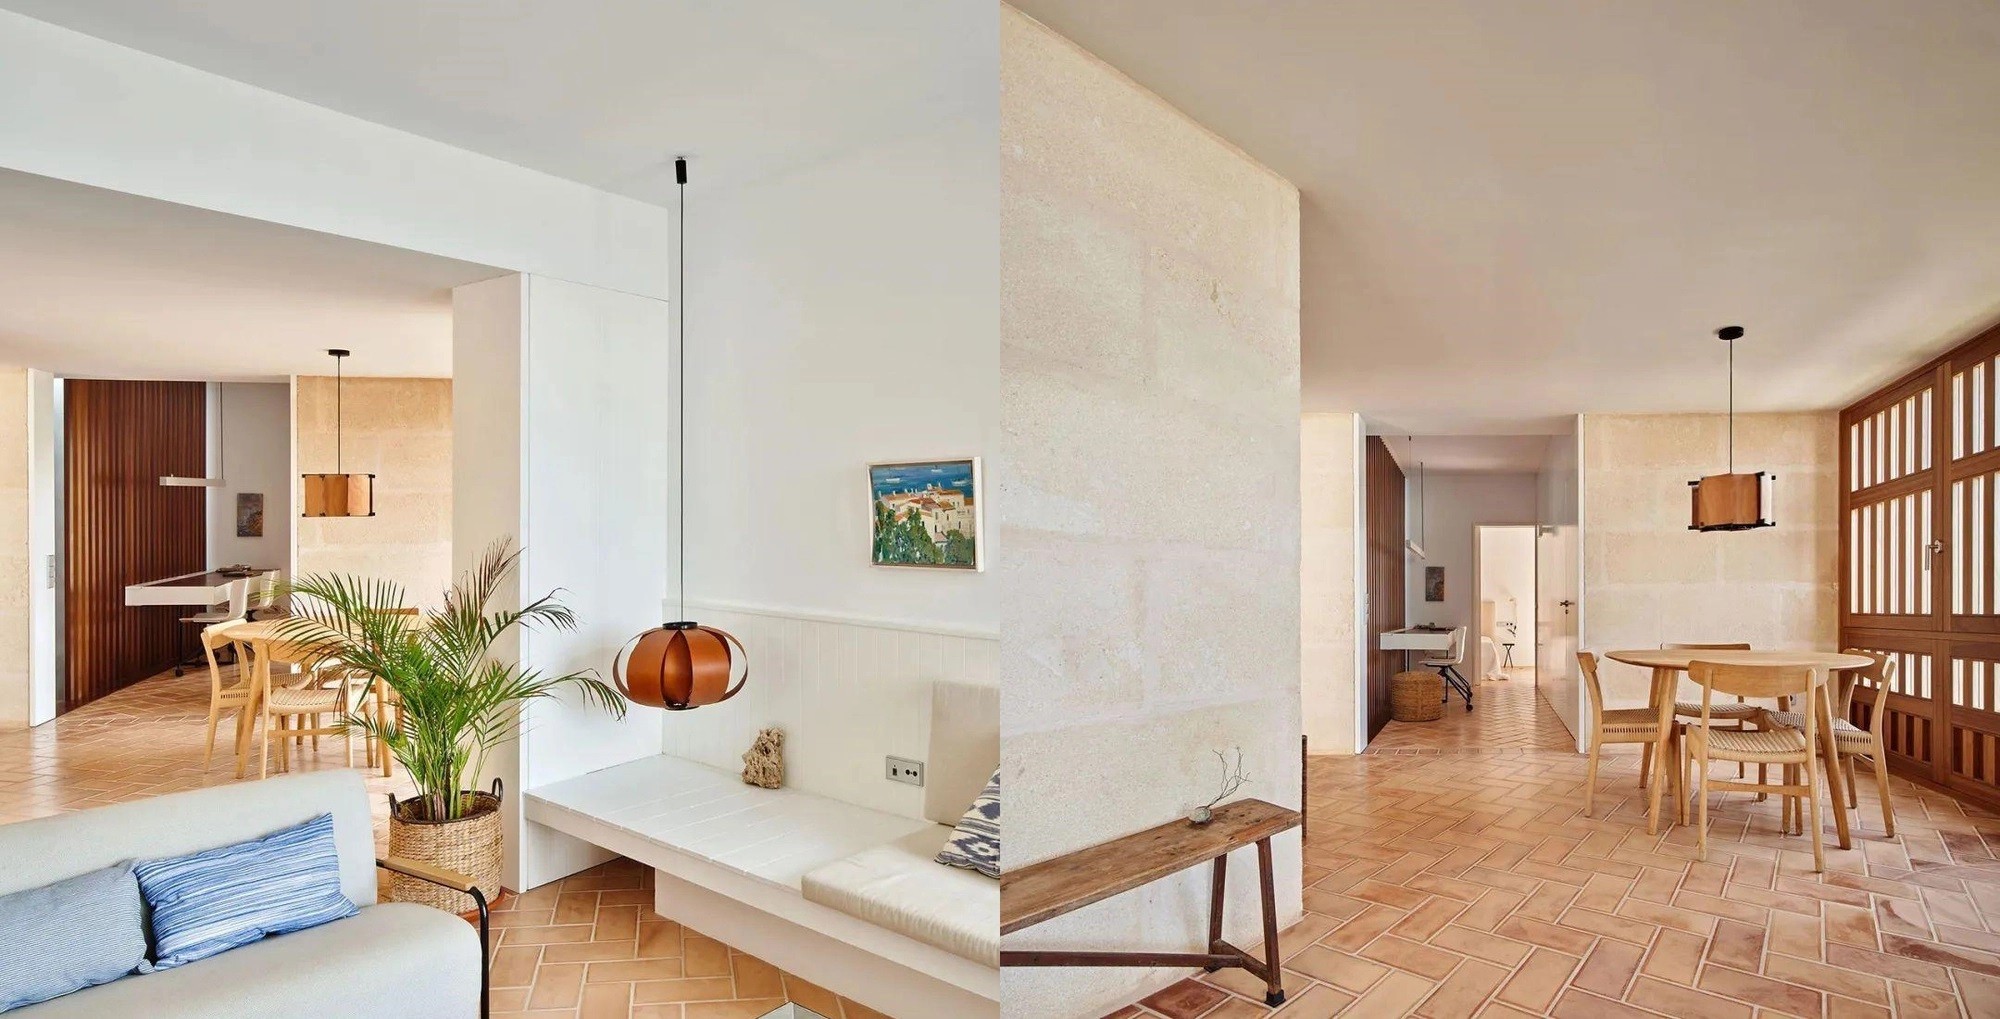 
Phòng khách được gia chủ lựa chọn lát nền gạch đỏ, chọn đồ nội thất cơ bản cùng với tường sơn màu trắng. Nhờ đó, căn phòng mang lại cảm giác thanh lịch và sạch sẽ.
